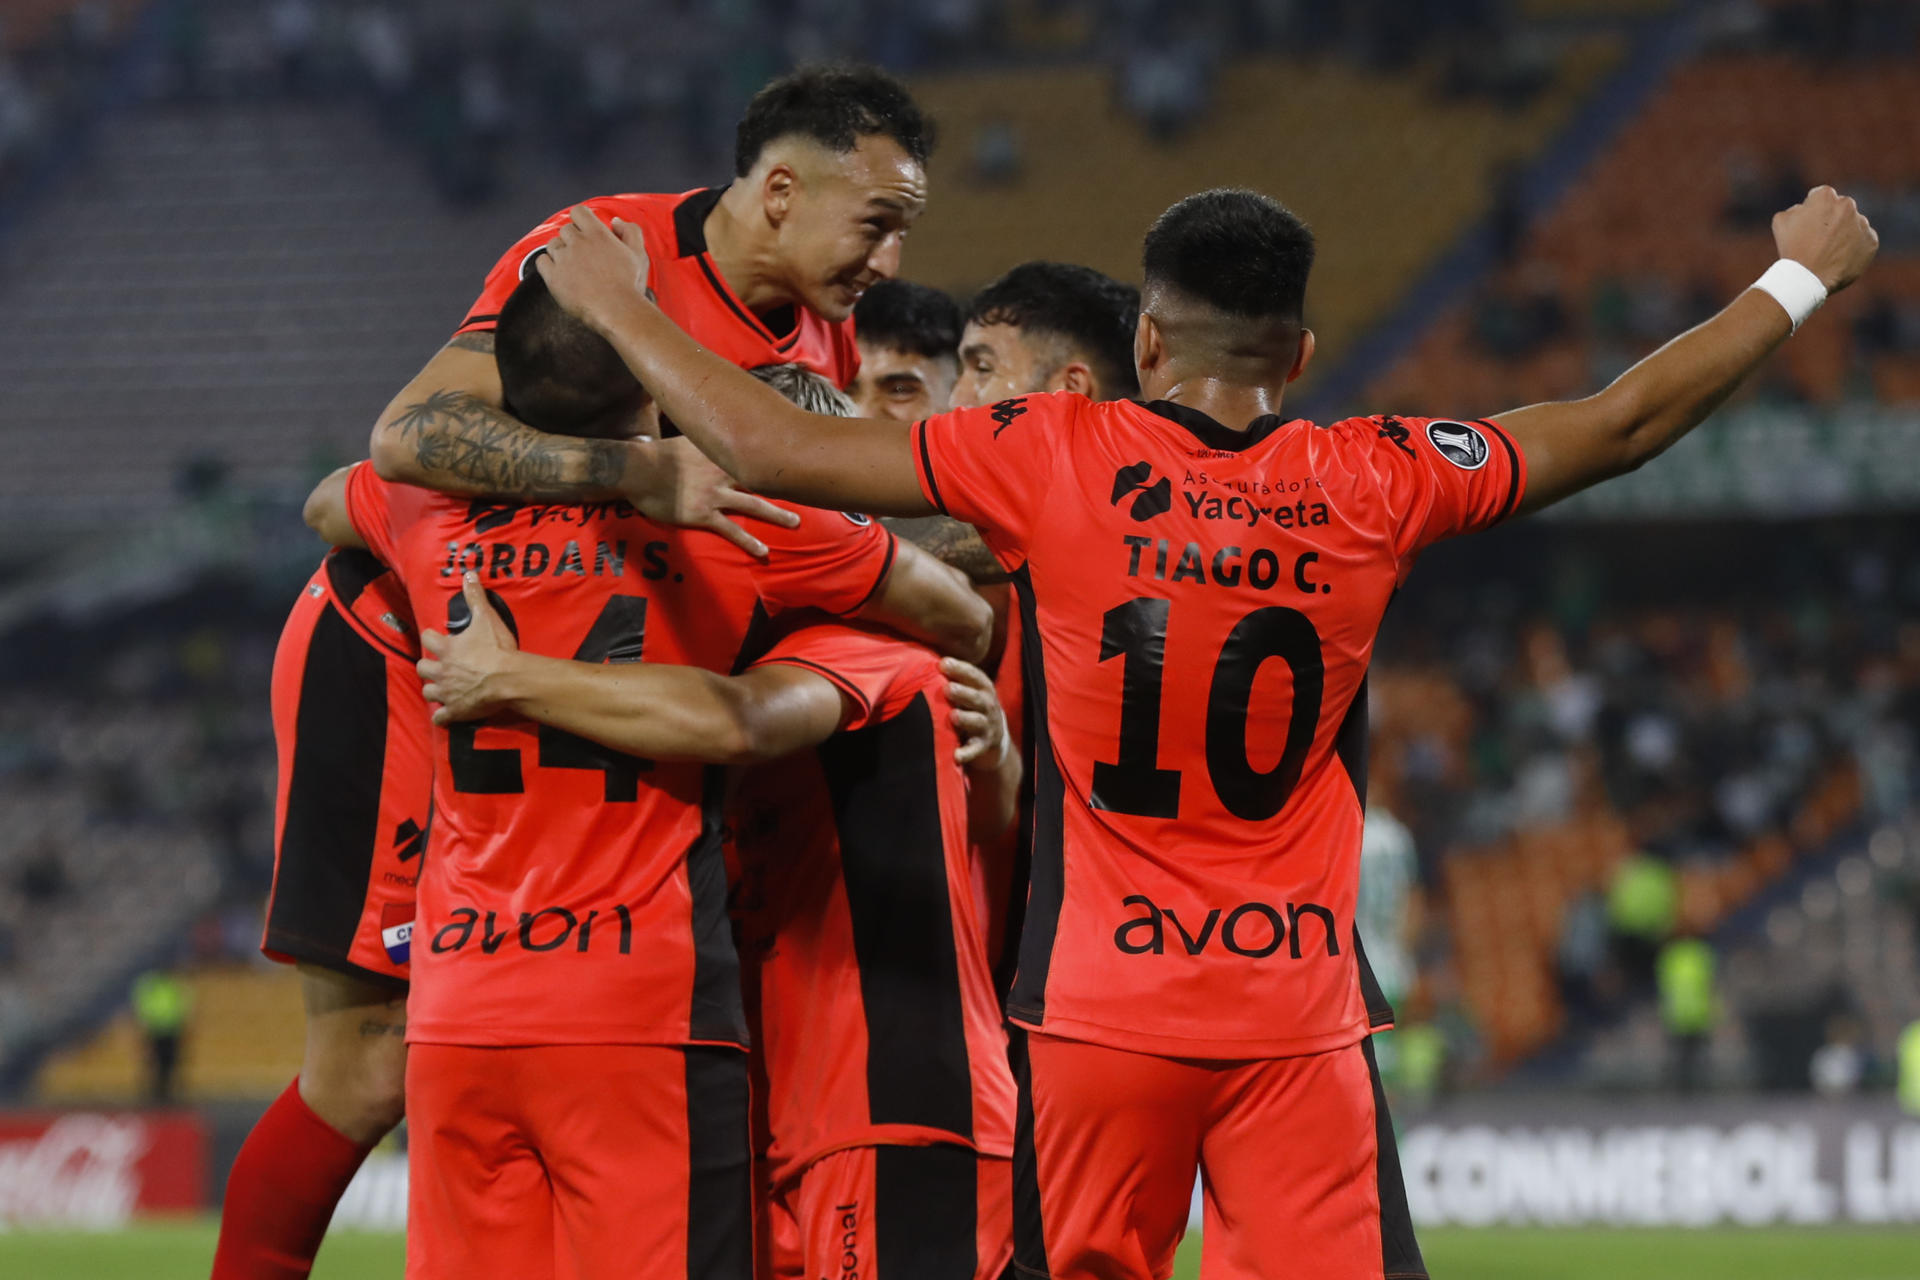 Jugadores de Club Nacional celebran un gol en un partido de segunda fase de la Copa Libertadores entre Atlético Nacional y Club Nacional este miércoles, en el estadio Atanasio Girardot en Medellín (Colombia). EFE/Luis Eduardo Noriega Arboleda